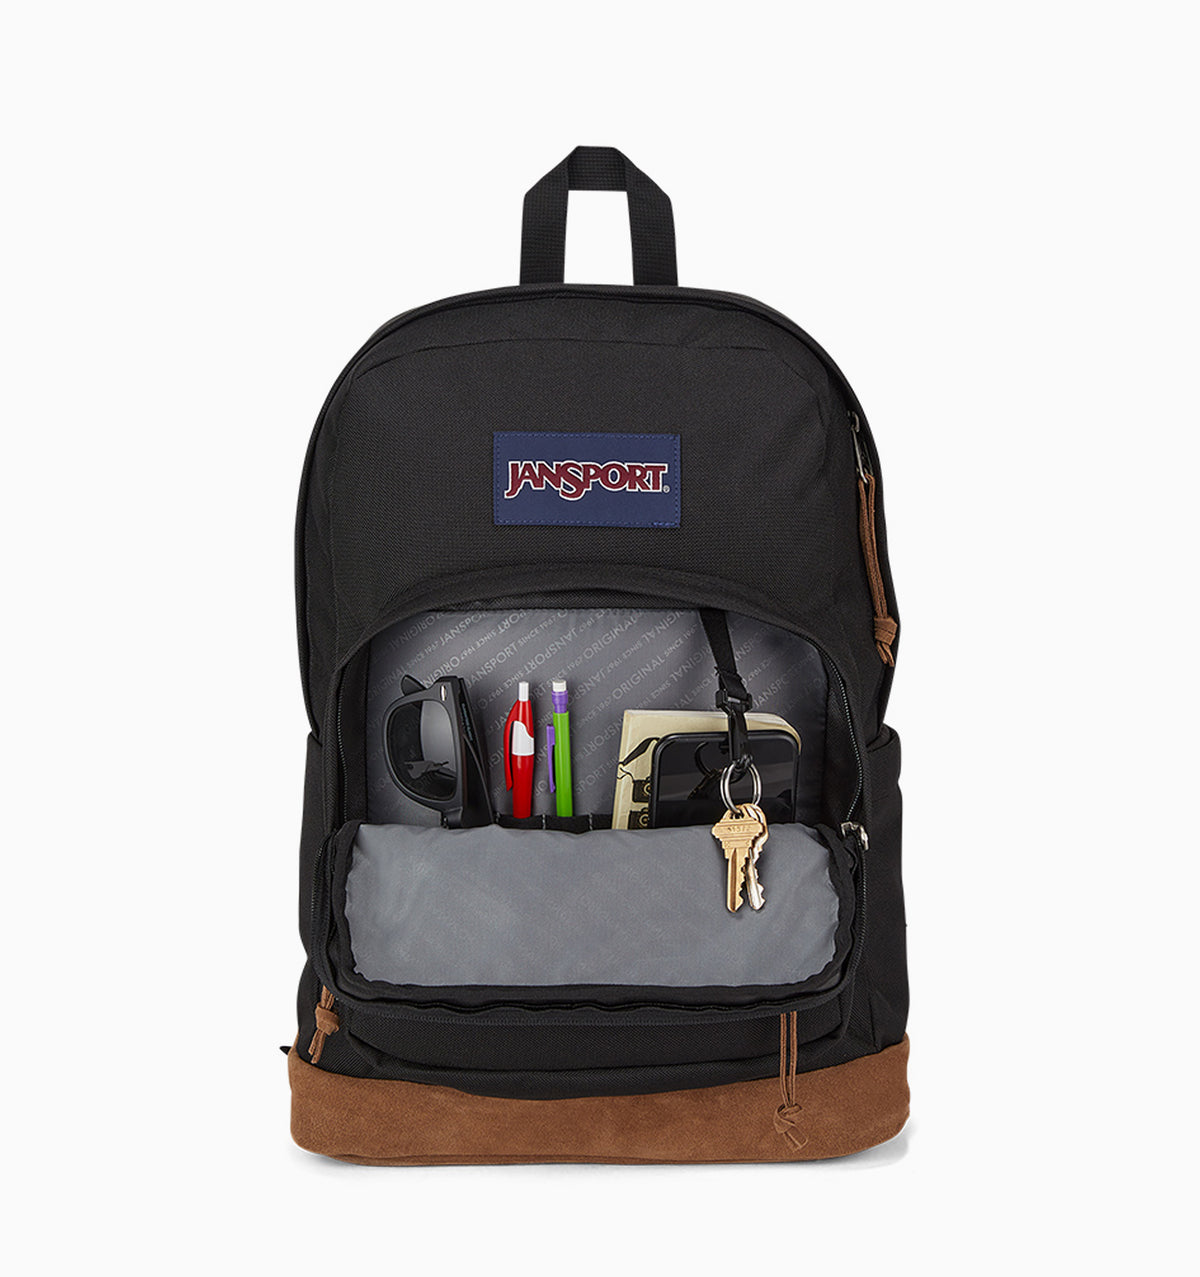 JanSport Right Pack 31L 16" Laptop Backpack - Black